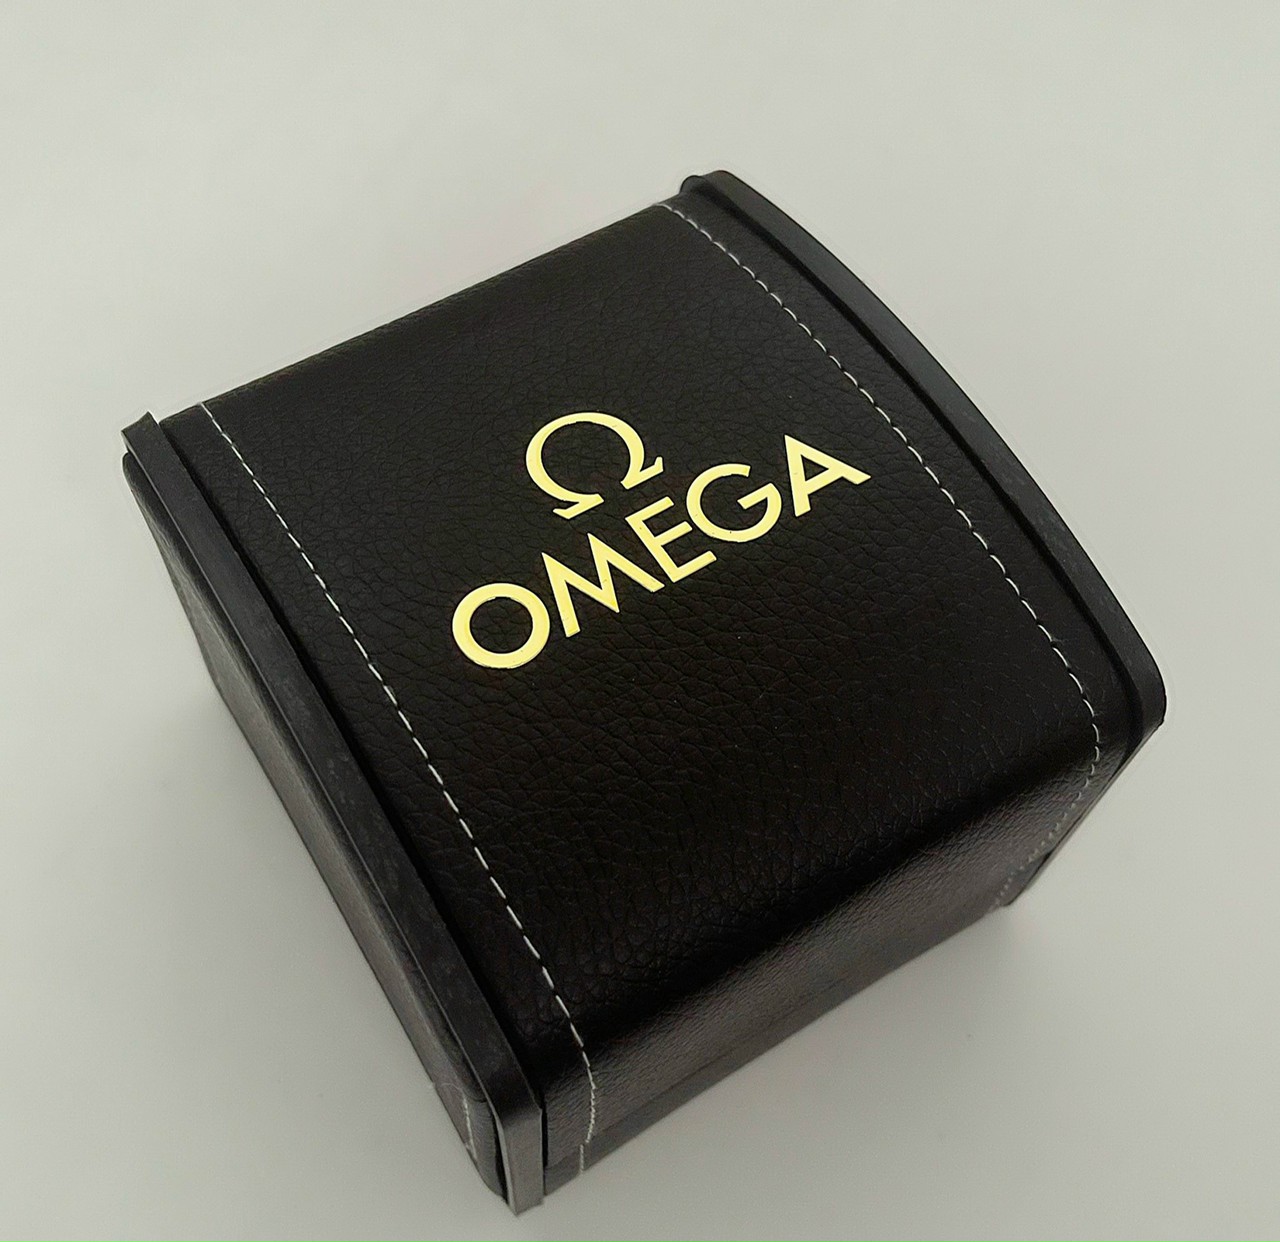 Hộp đồng hồ Omega